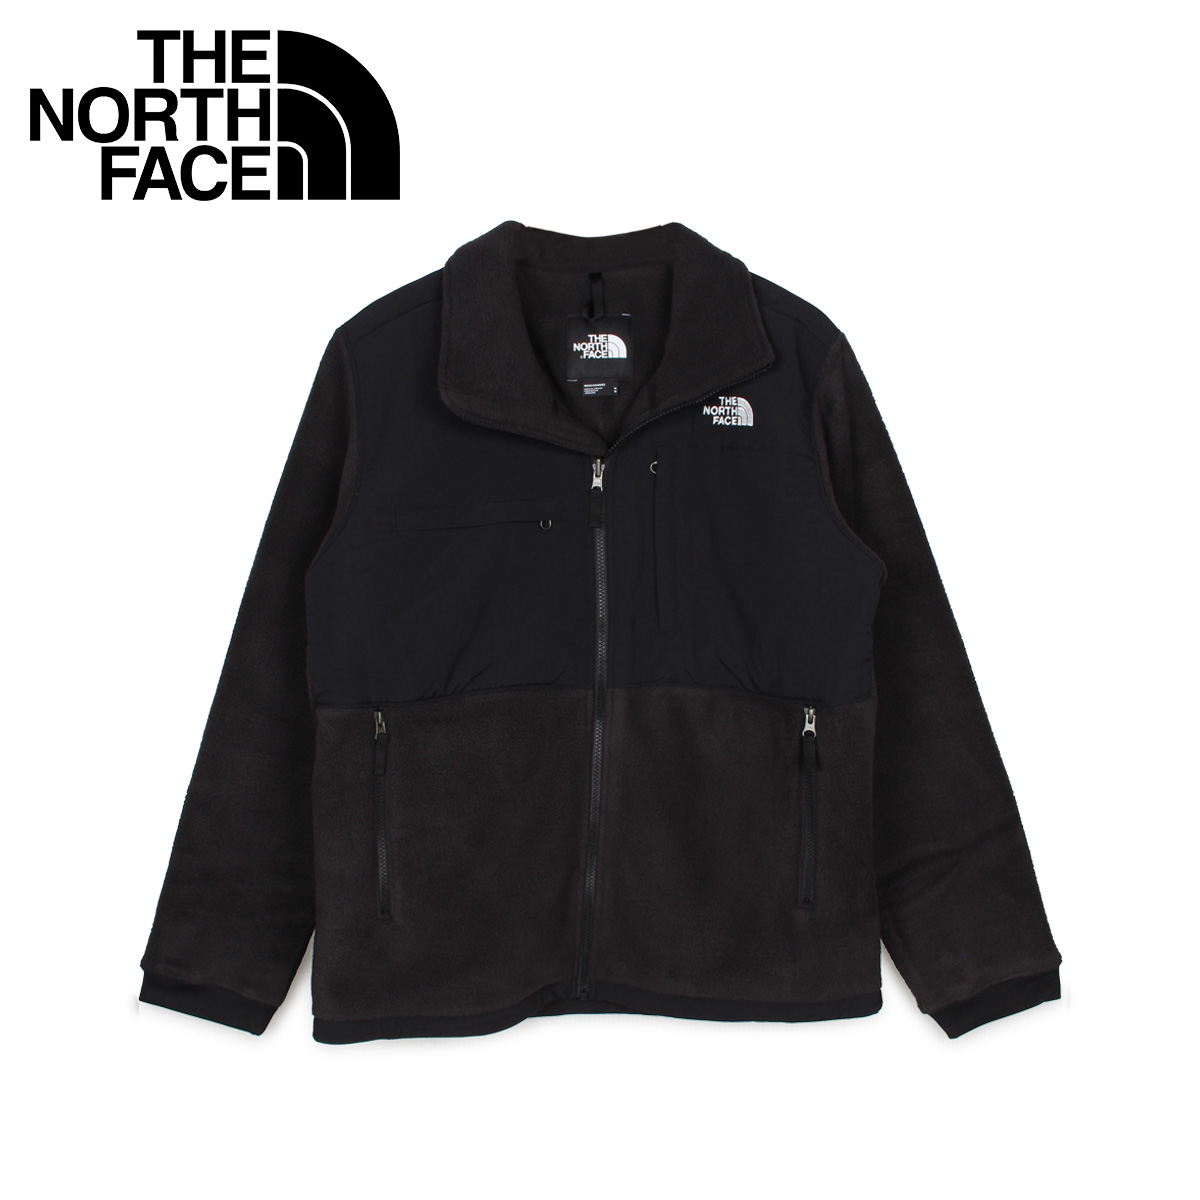 楽天市場 The North Face ノースフェイス デナリ ジャケット フリースジャケット アウター メンズ Denali Jacket 2 ブラック 黒 Nf0a3xau シュガーオンラインショップ